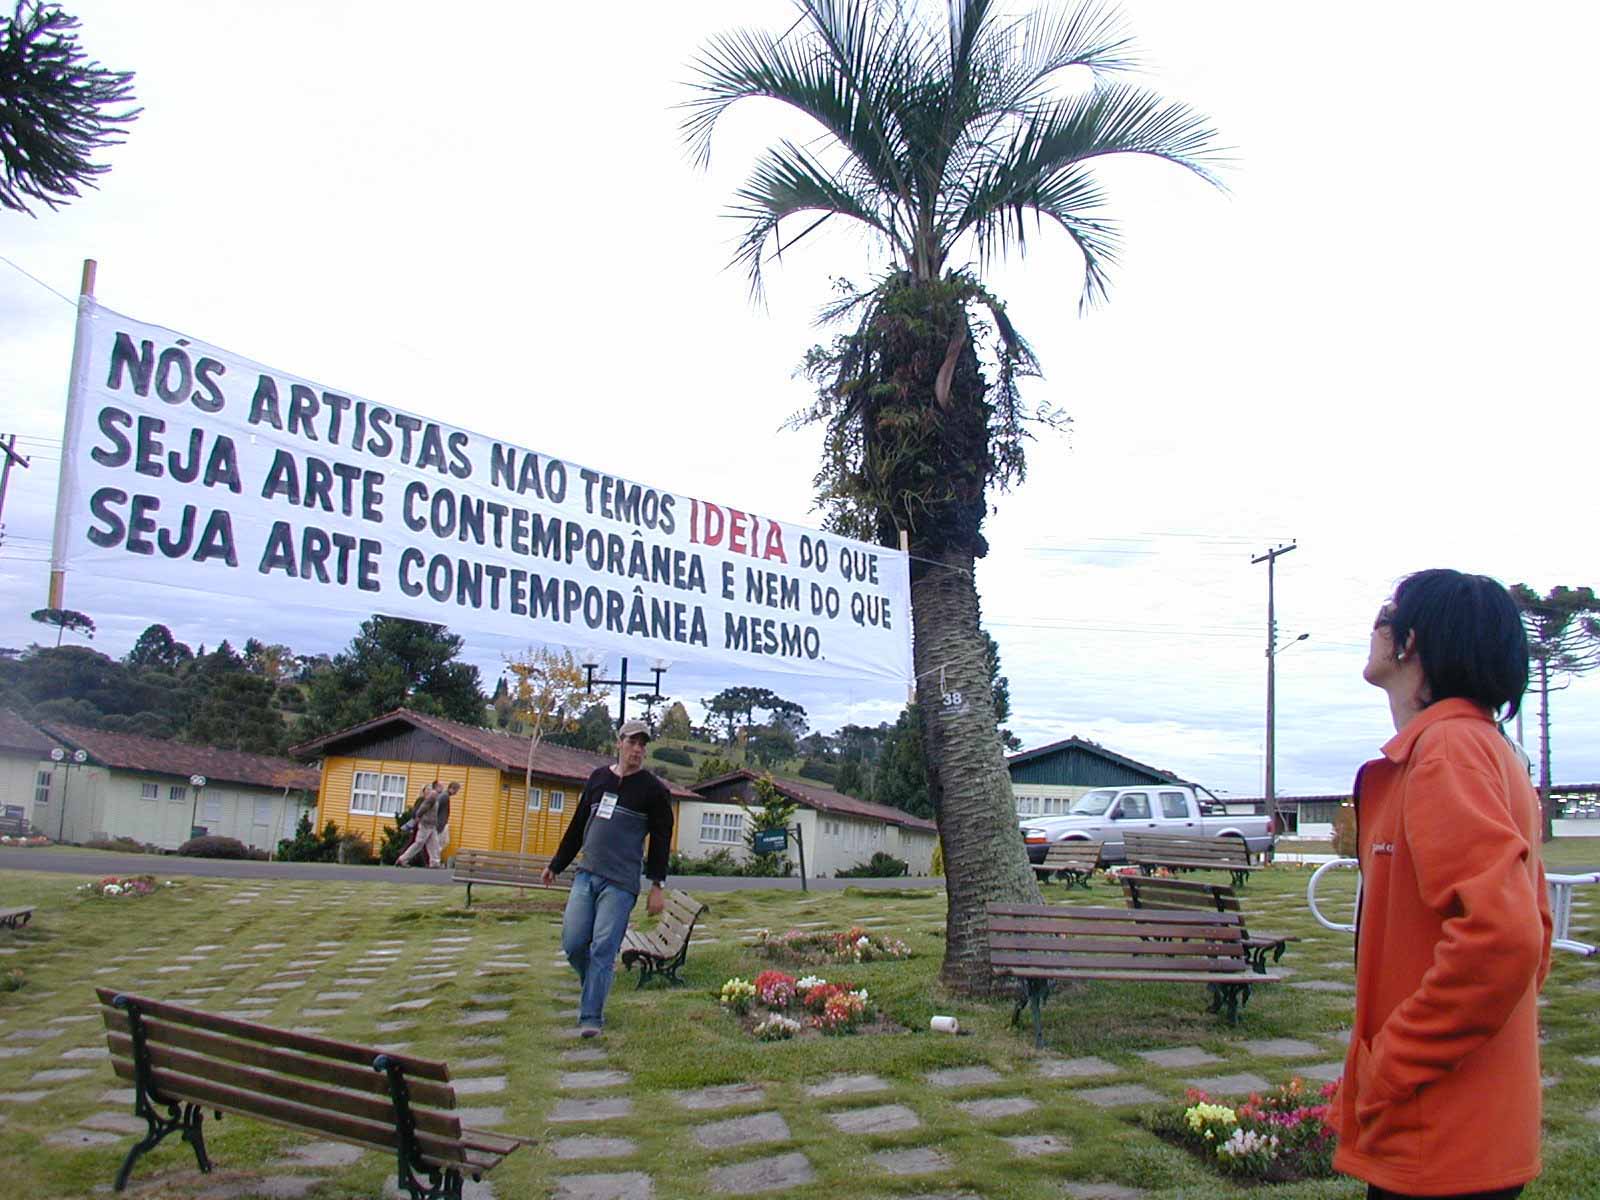 Intervenção de Marta Neves em Faxinal das Artes; na faixa se lê "Nós artistas não temos IDEIA do que seja arte contemporânea nem do que seja arte contemporânea mesmo"